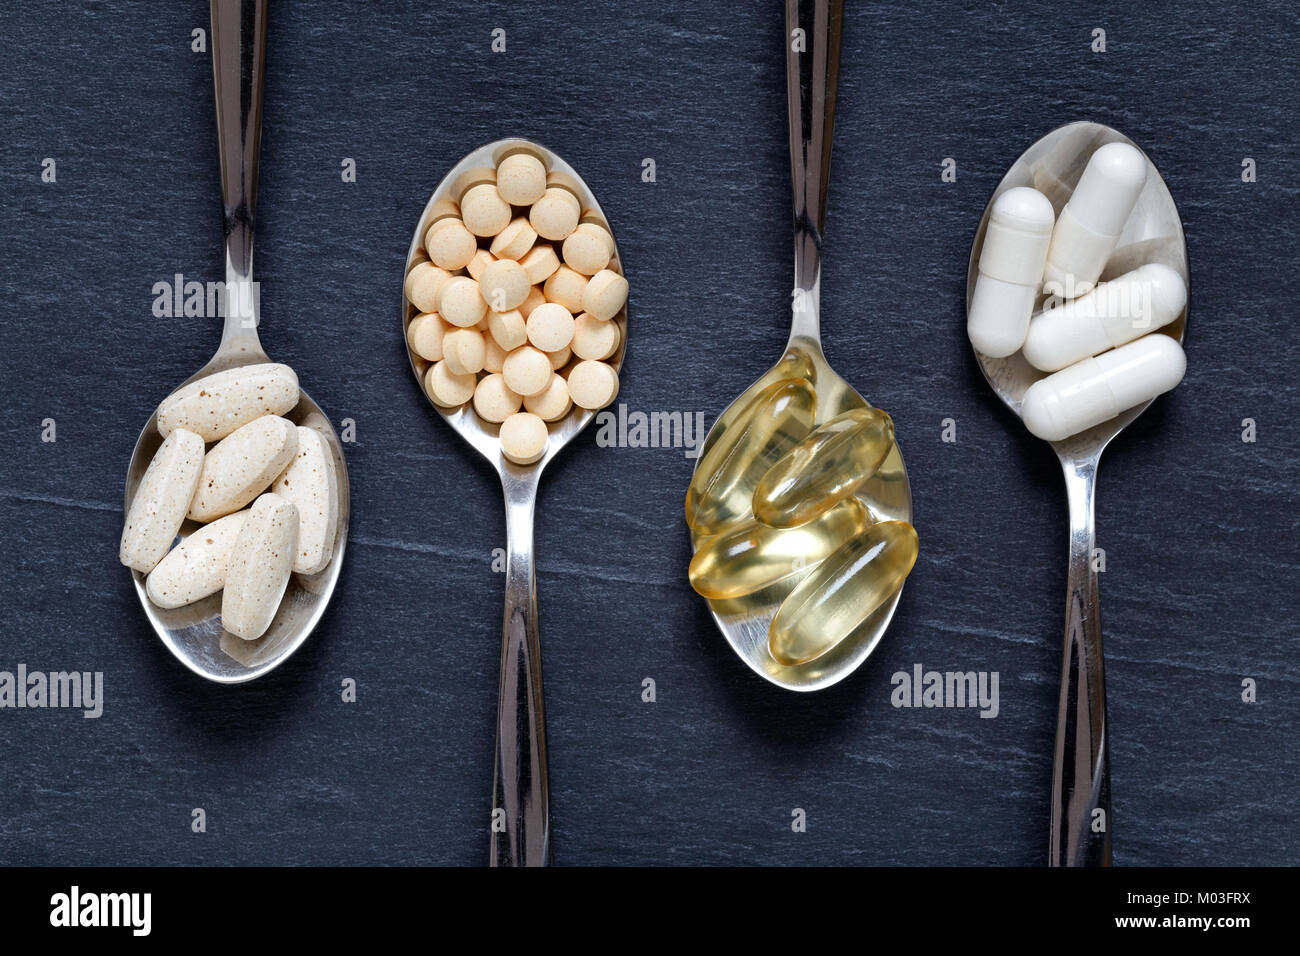 Healty vitaminas, minerales, omega 3 y antioxidantes en cucharaditas contra un fondo oscuro Foto de stock